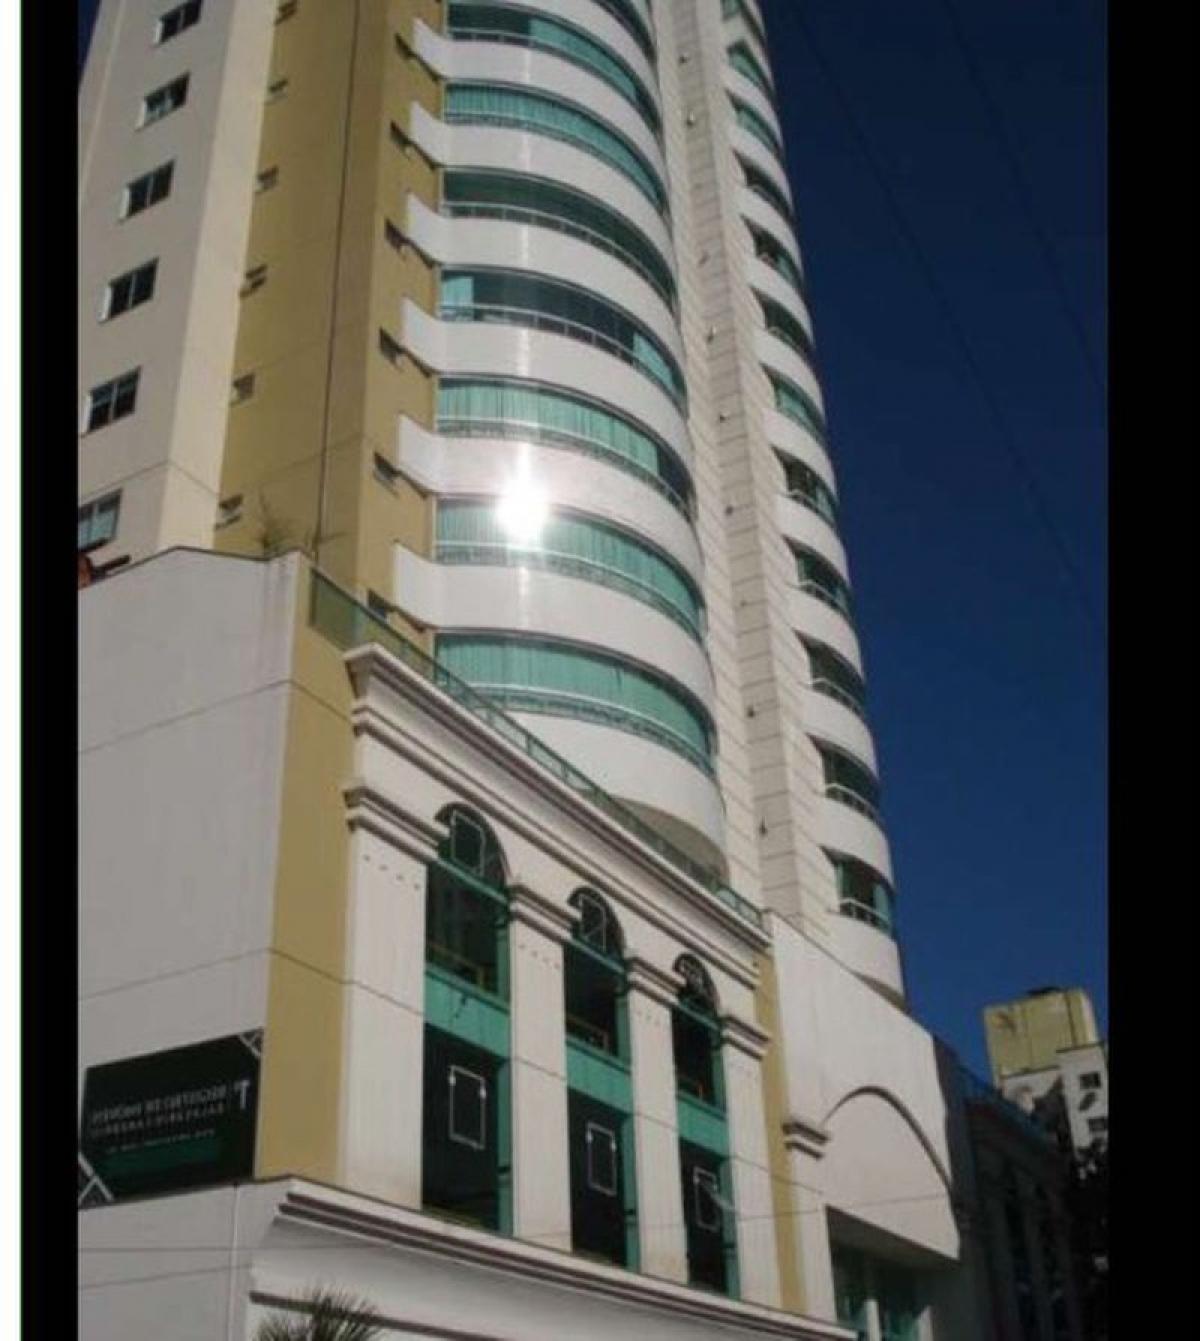 Picture of Apartment For Sale in Balneario Camboriu, Santa Catarina, Brazil